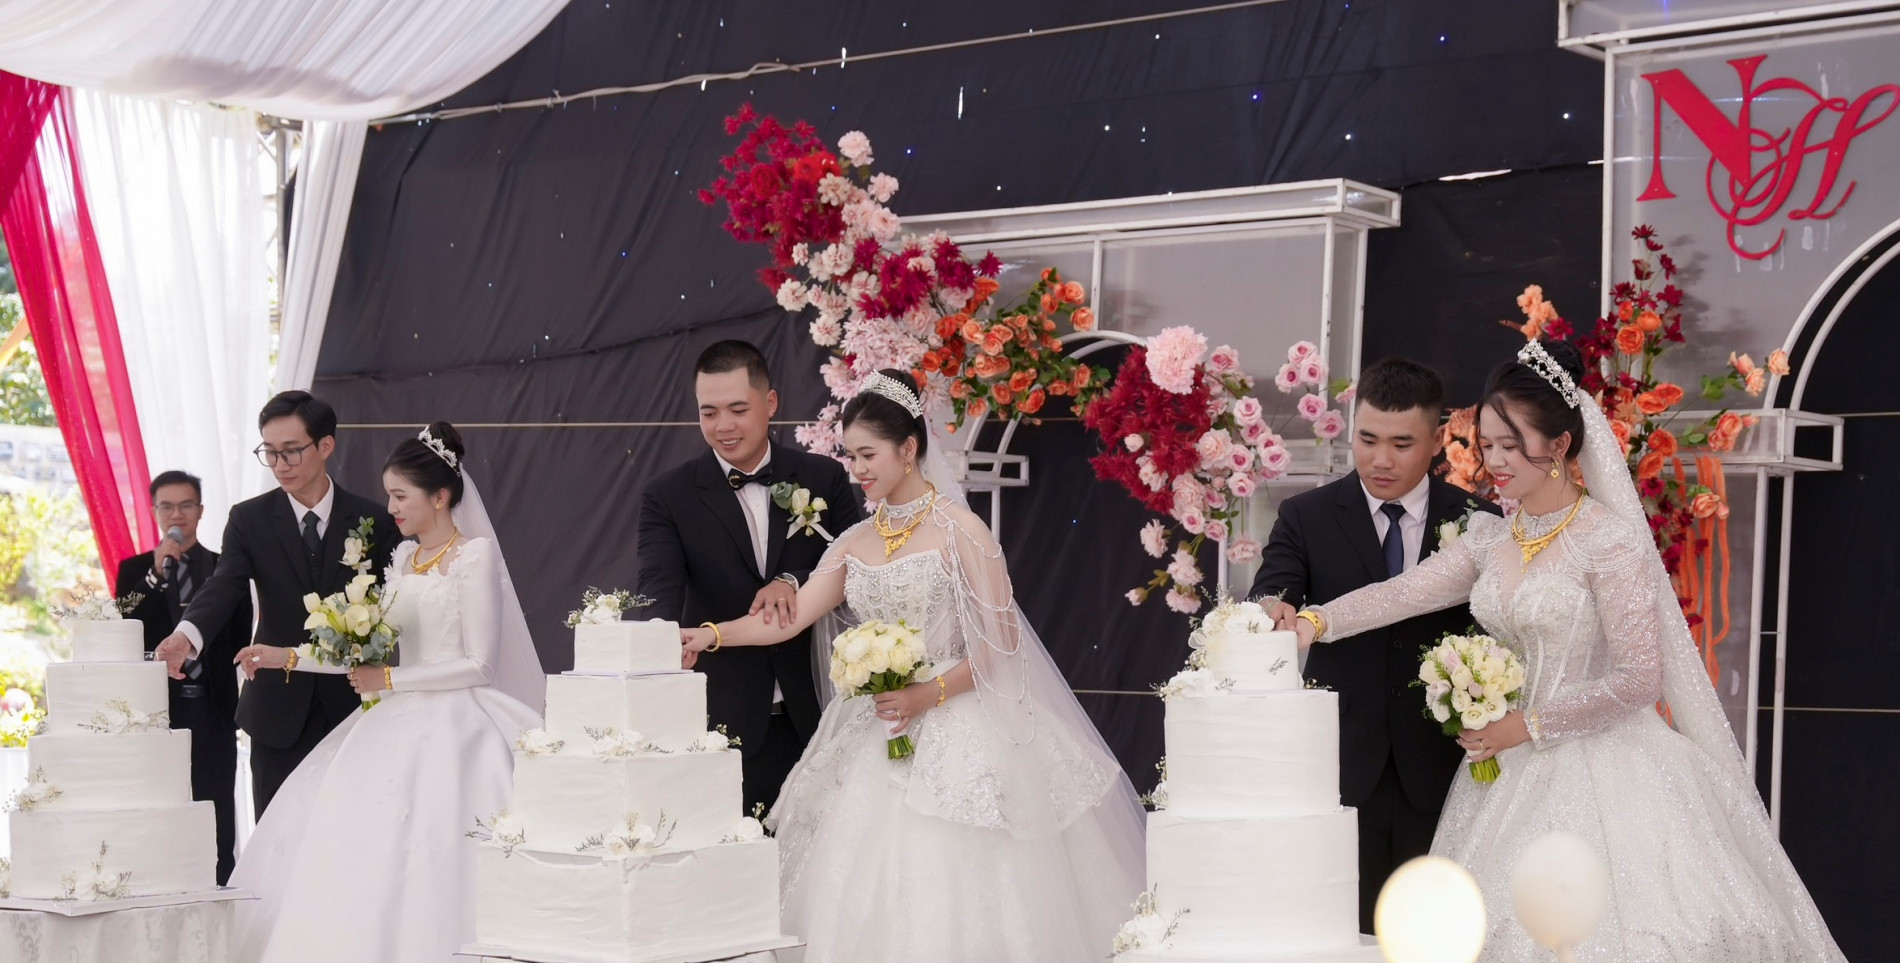 Hiếm hoi chuyện 3 chị em ruột ở Lâm Đồng cưới cùng 1 ngày, vào hôn trường cùng giờ - Ảnh 2